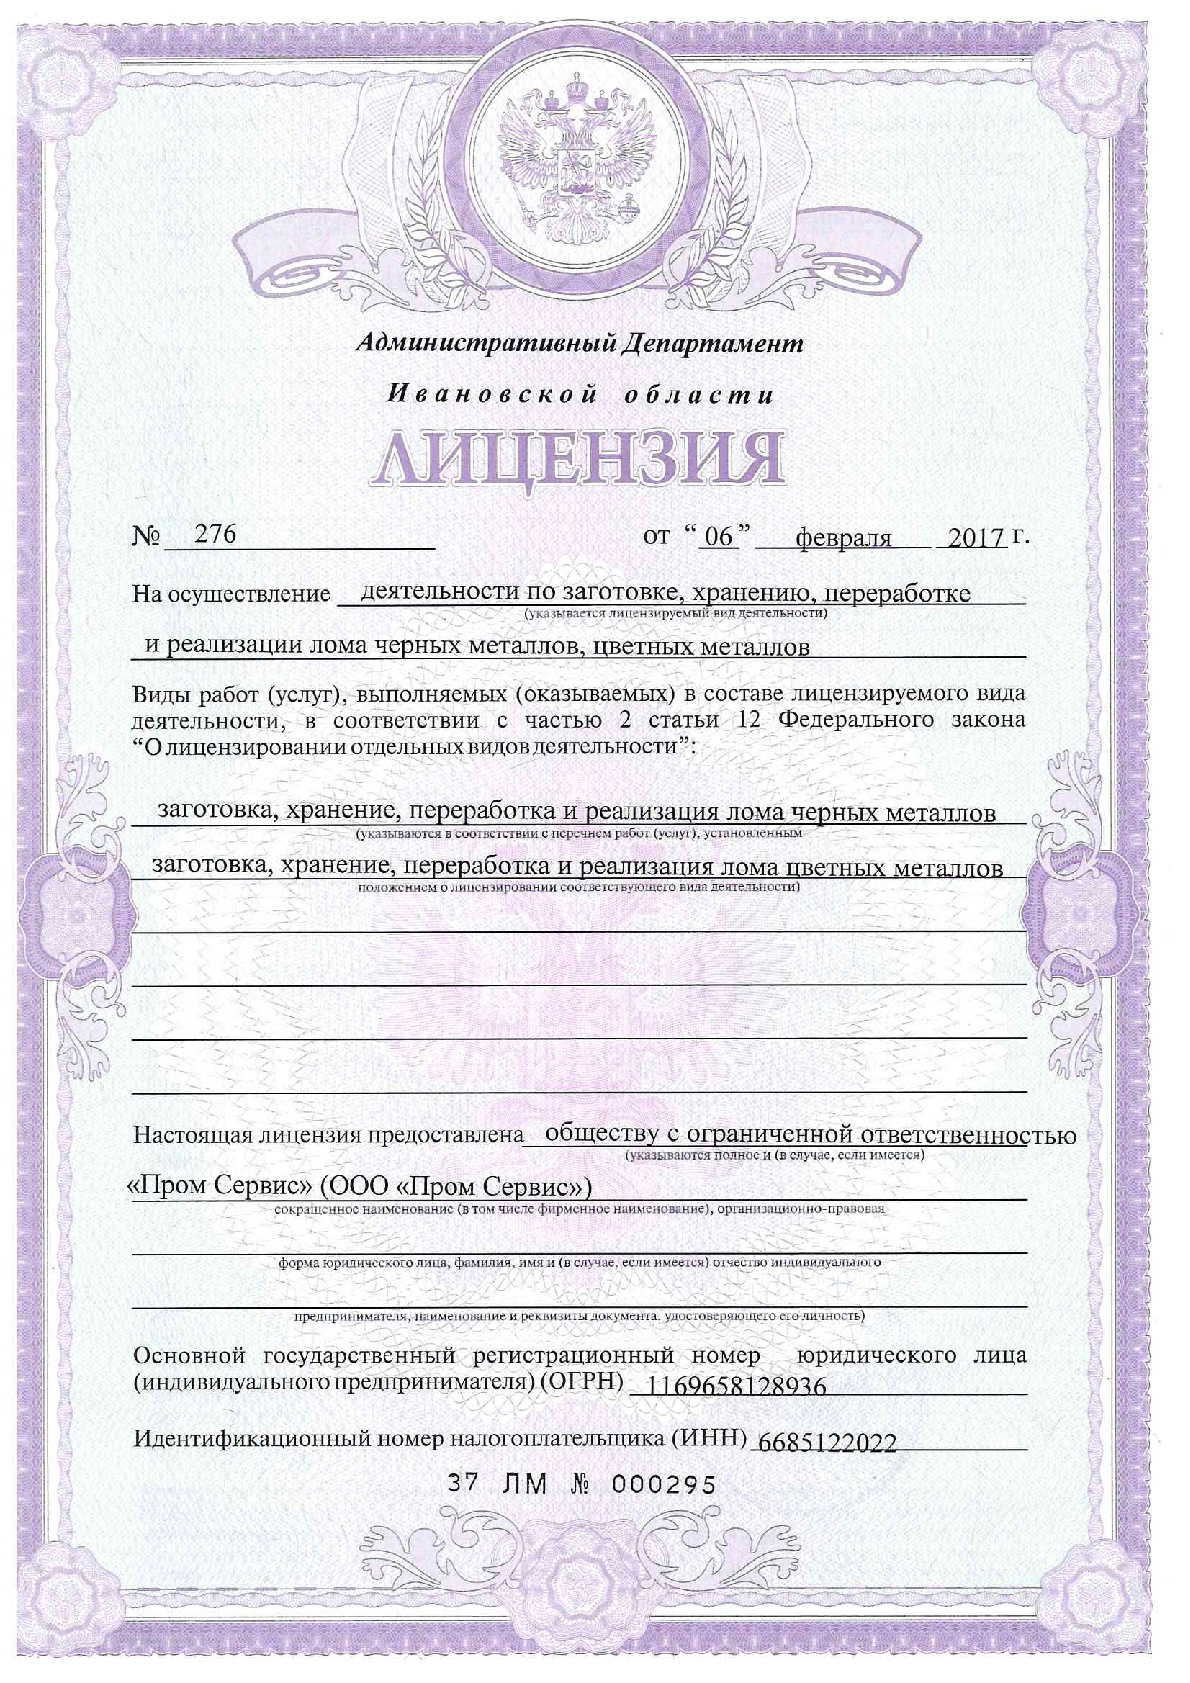 Реализация лома лицензия. Лицензия на лом в Екатеринбурге. Лицензия на металлолом. Лицензия на лом черных и цветных металлов. Лицензия на лом металлов.